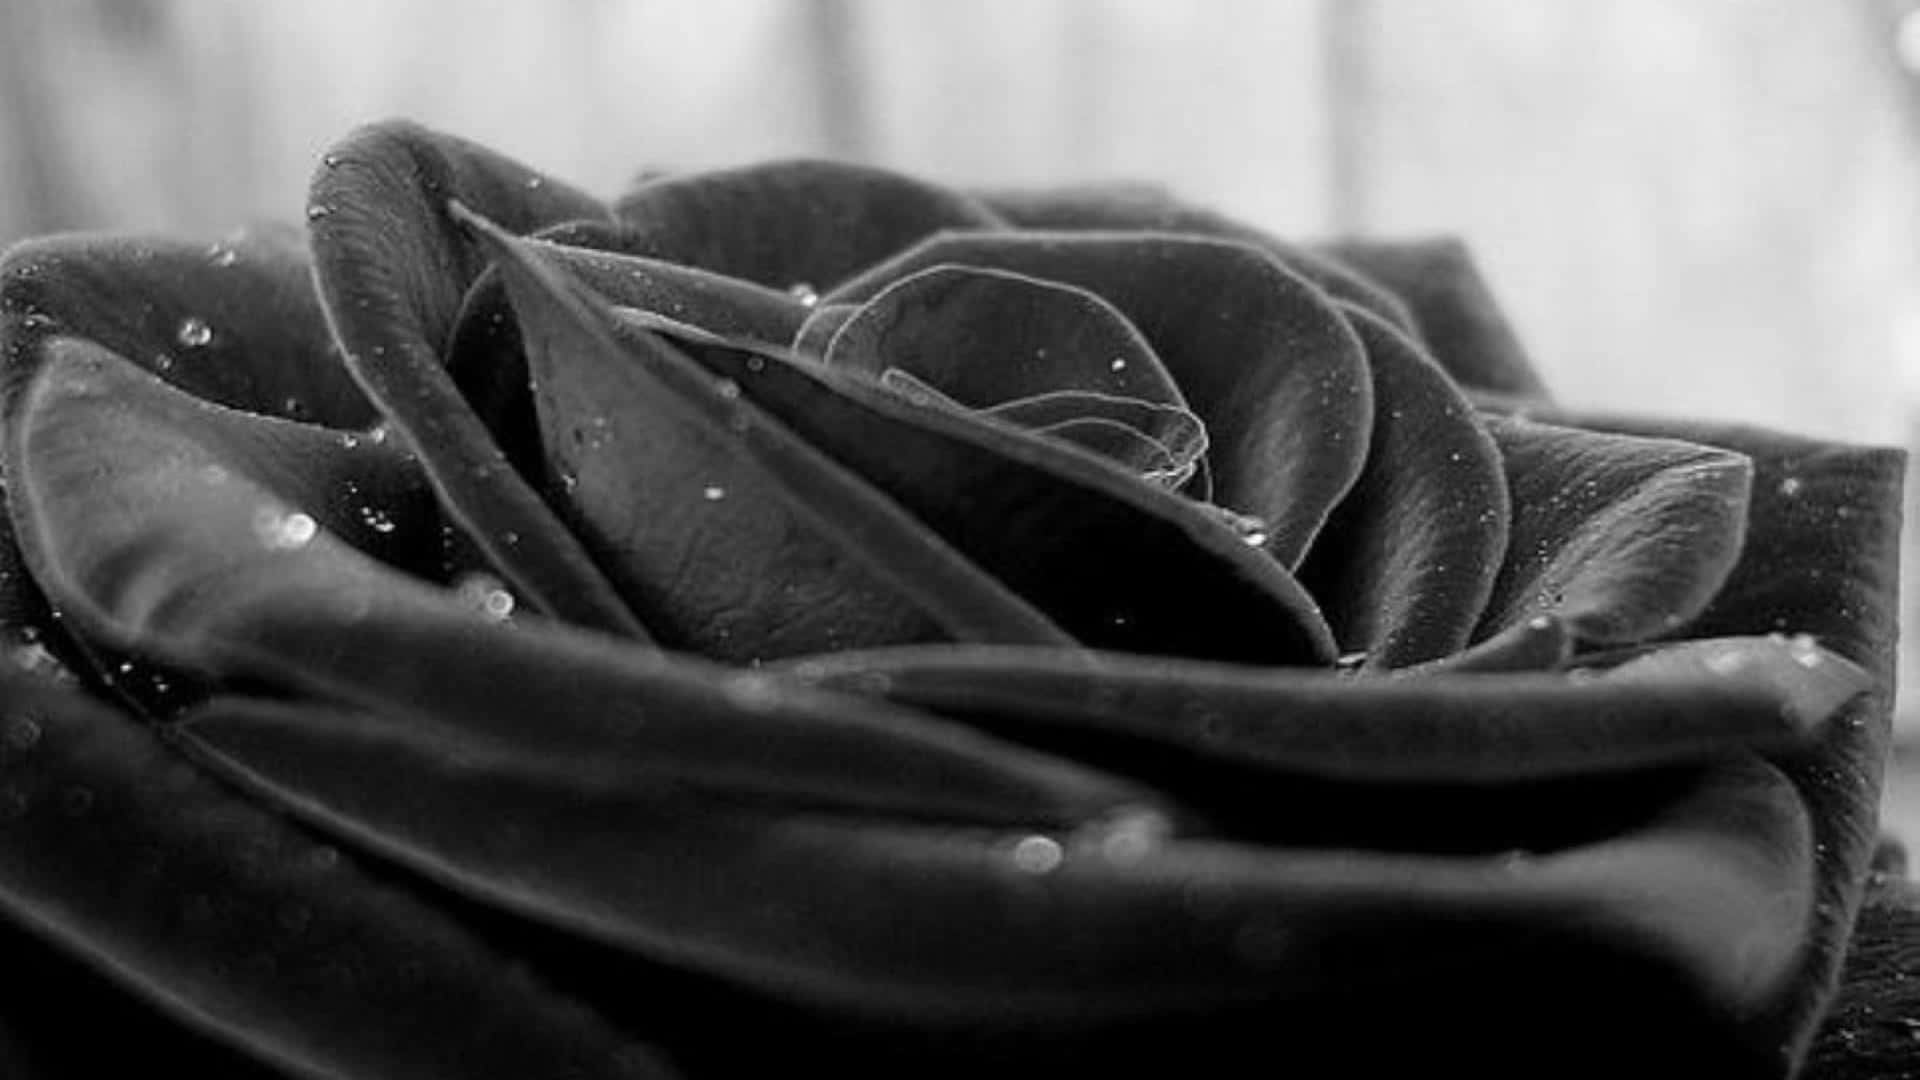 Unafotografia Ravvicinata Di Una Rosa Rosso Scuro, Quasi Nera.